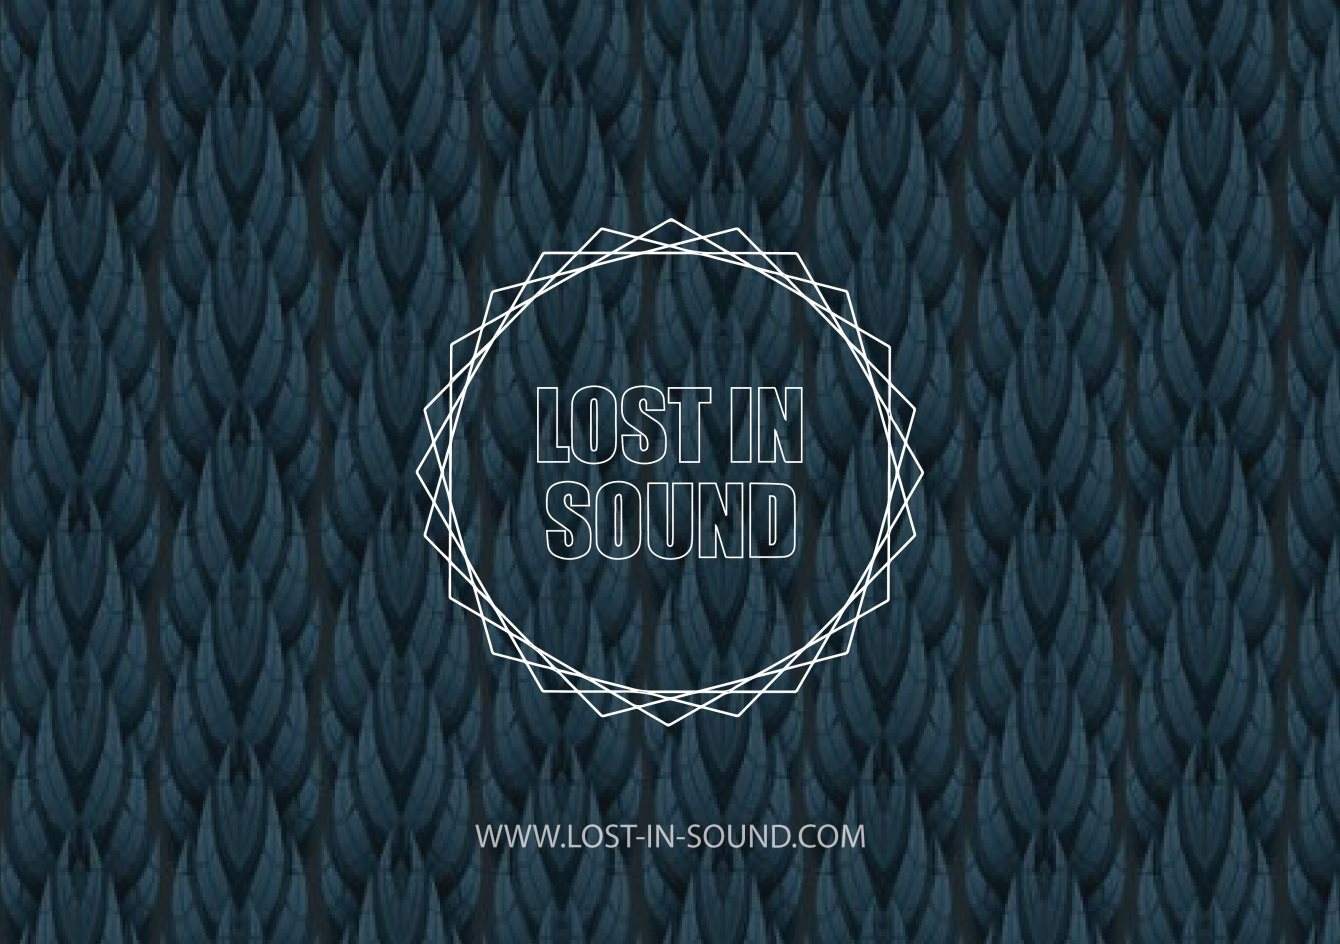 Lost In Sound - フライヤー裏